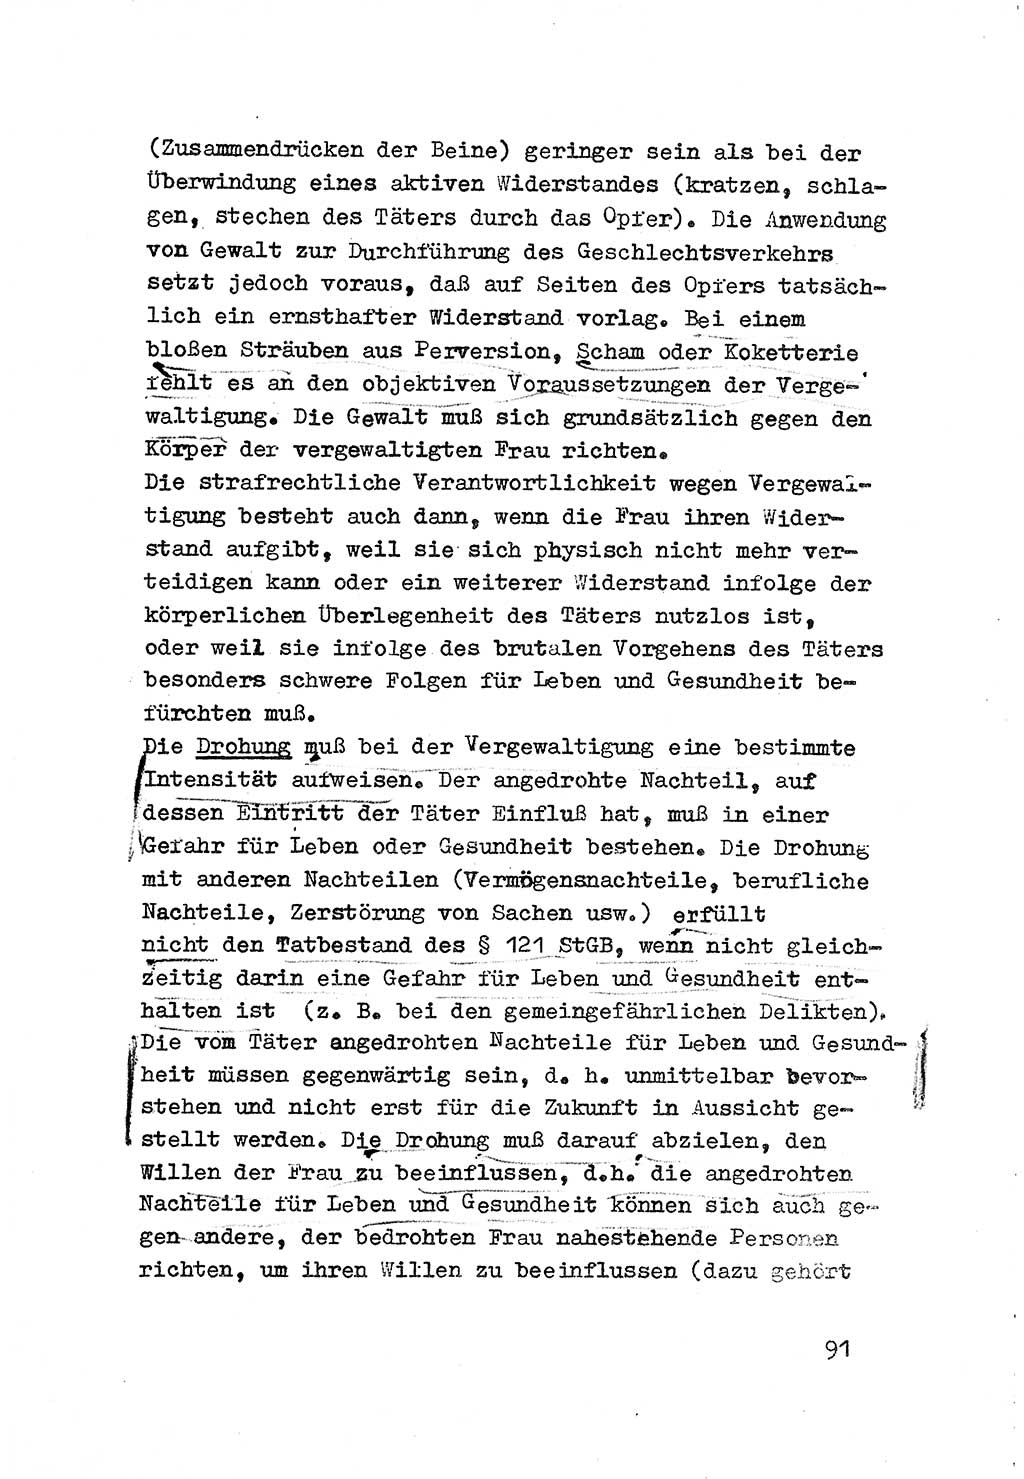 Strafrecht der DDR (Deutsche Demokratische Republik), Besonderer Teil, Lehrmaterial, Heft 3 1969, Seite 91 (Strafr. DDR BT Lehrmat. H. 3 1969, S. 91)